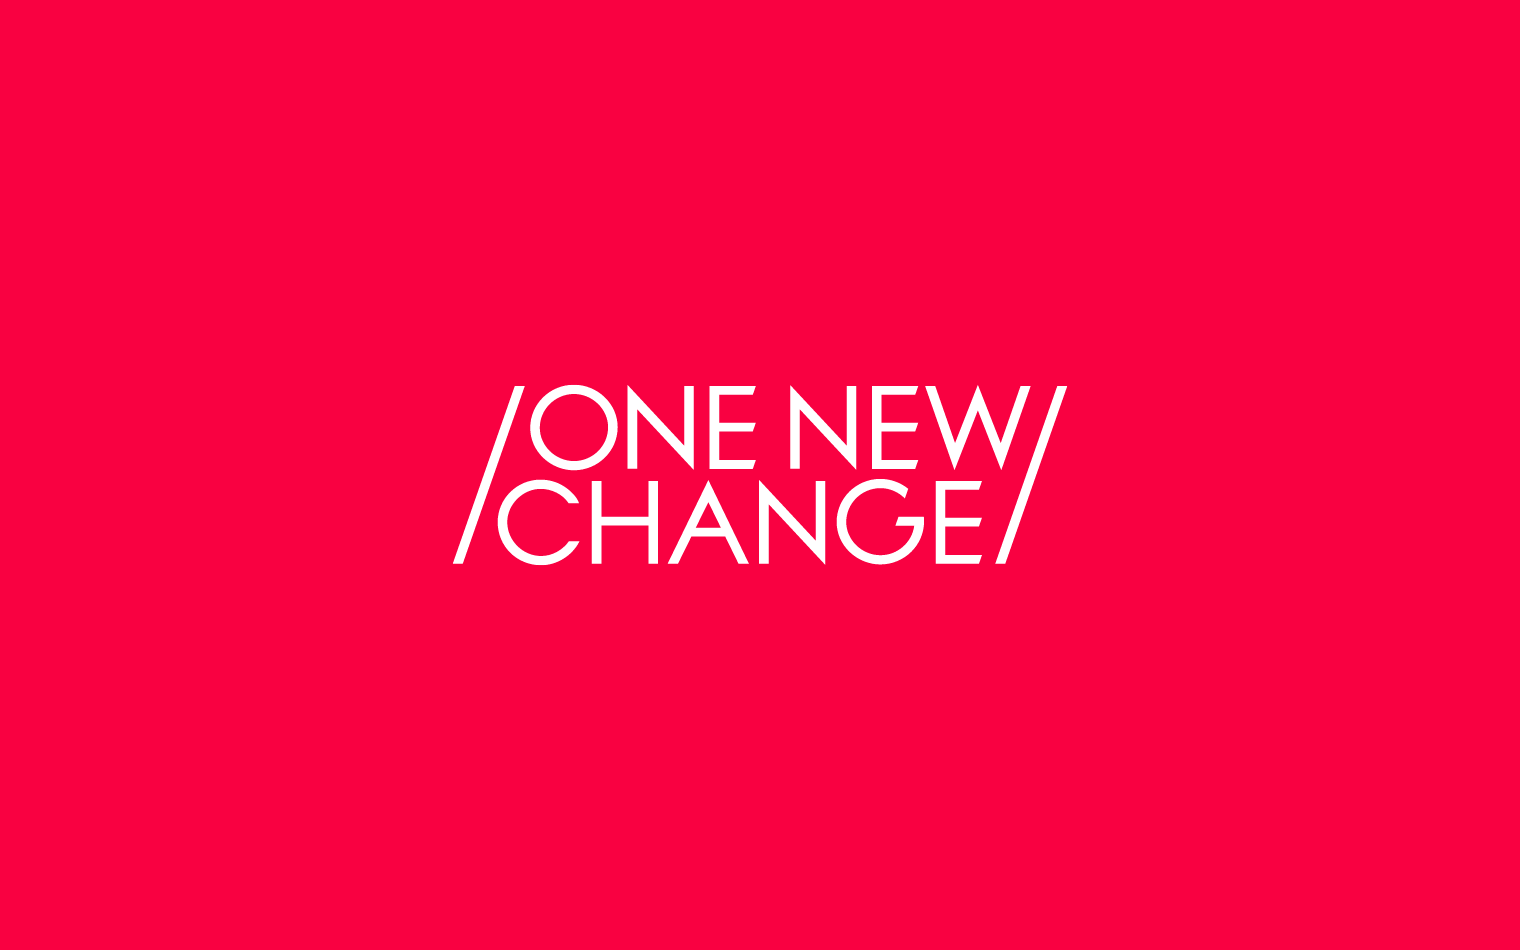 One New Change | Steve Edge Design